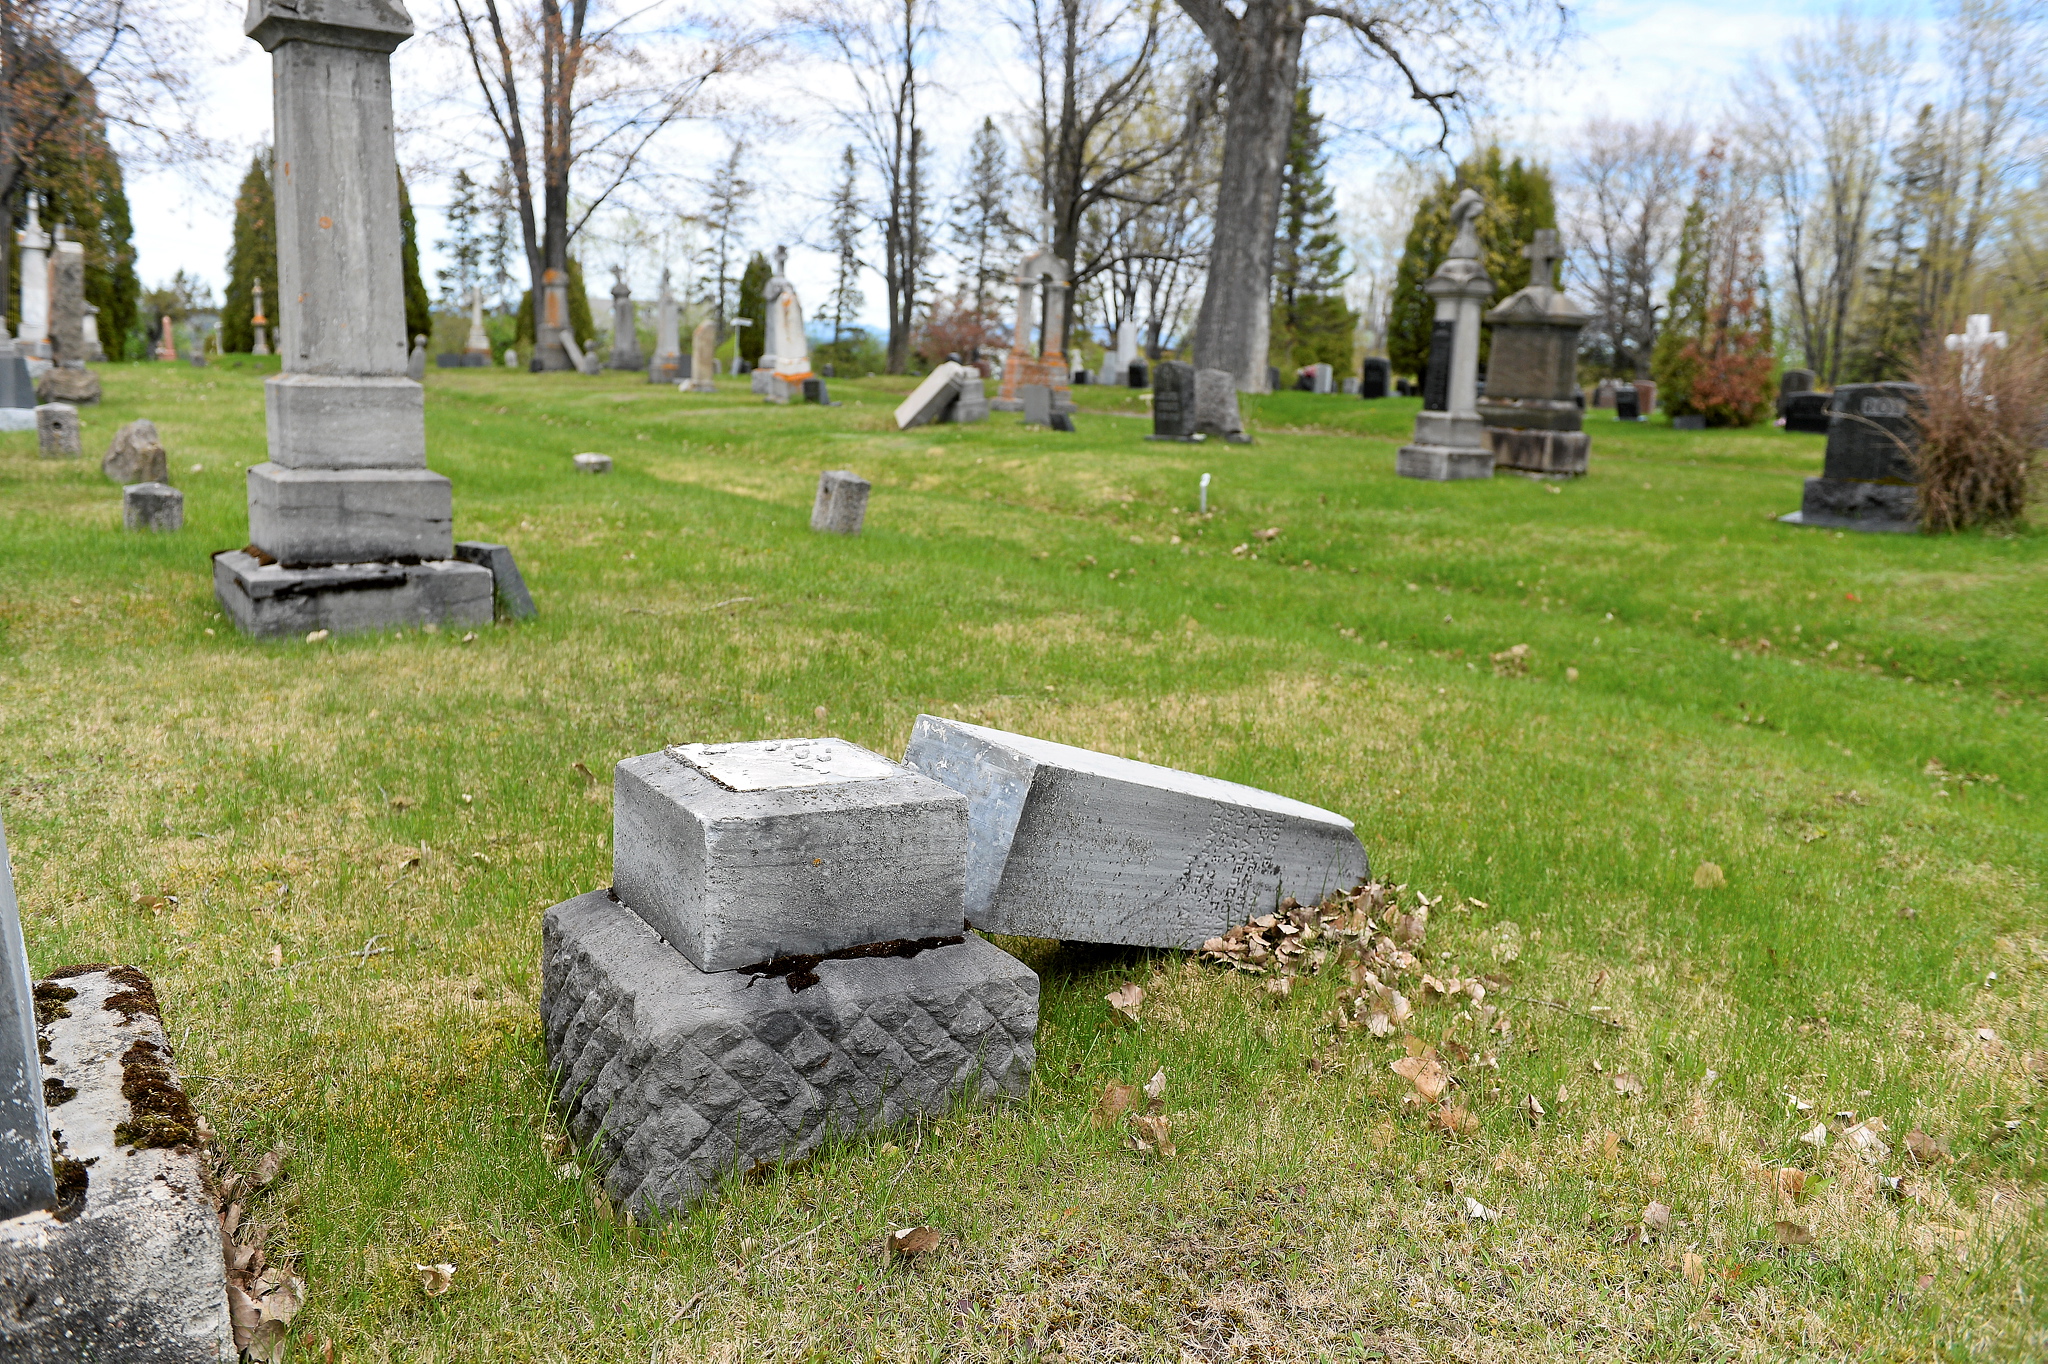 Une centaine de pierres tombales vandalisées dans deux cimetières de  Longueuil